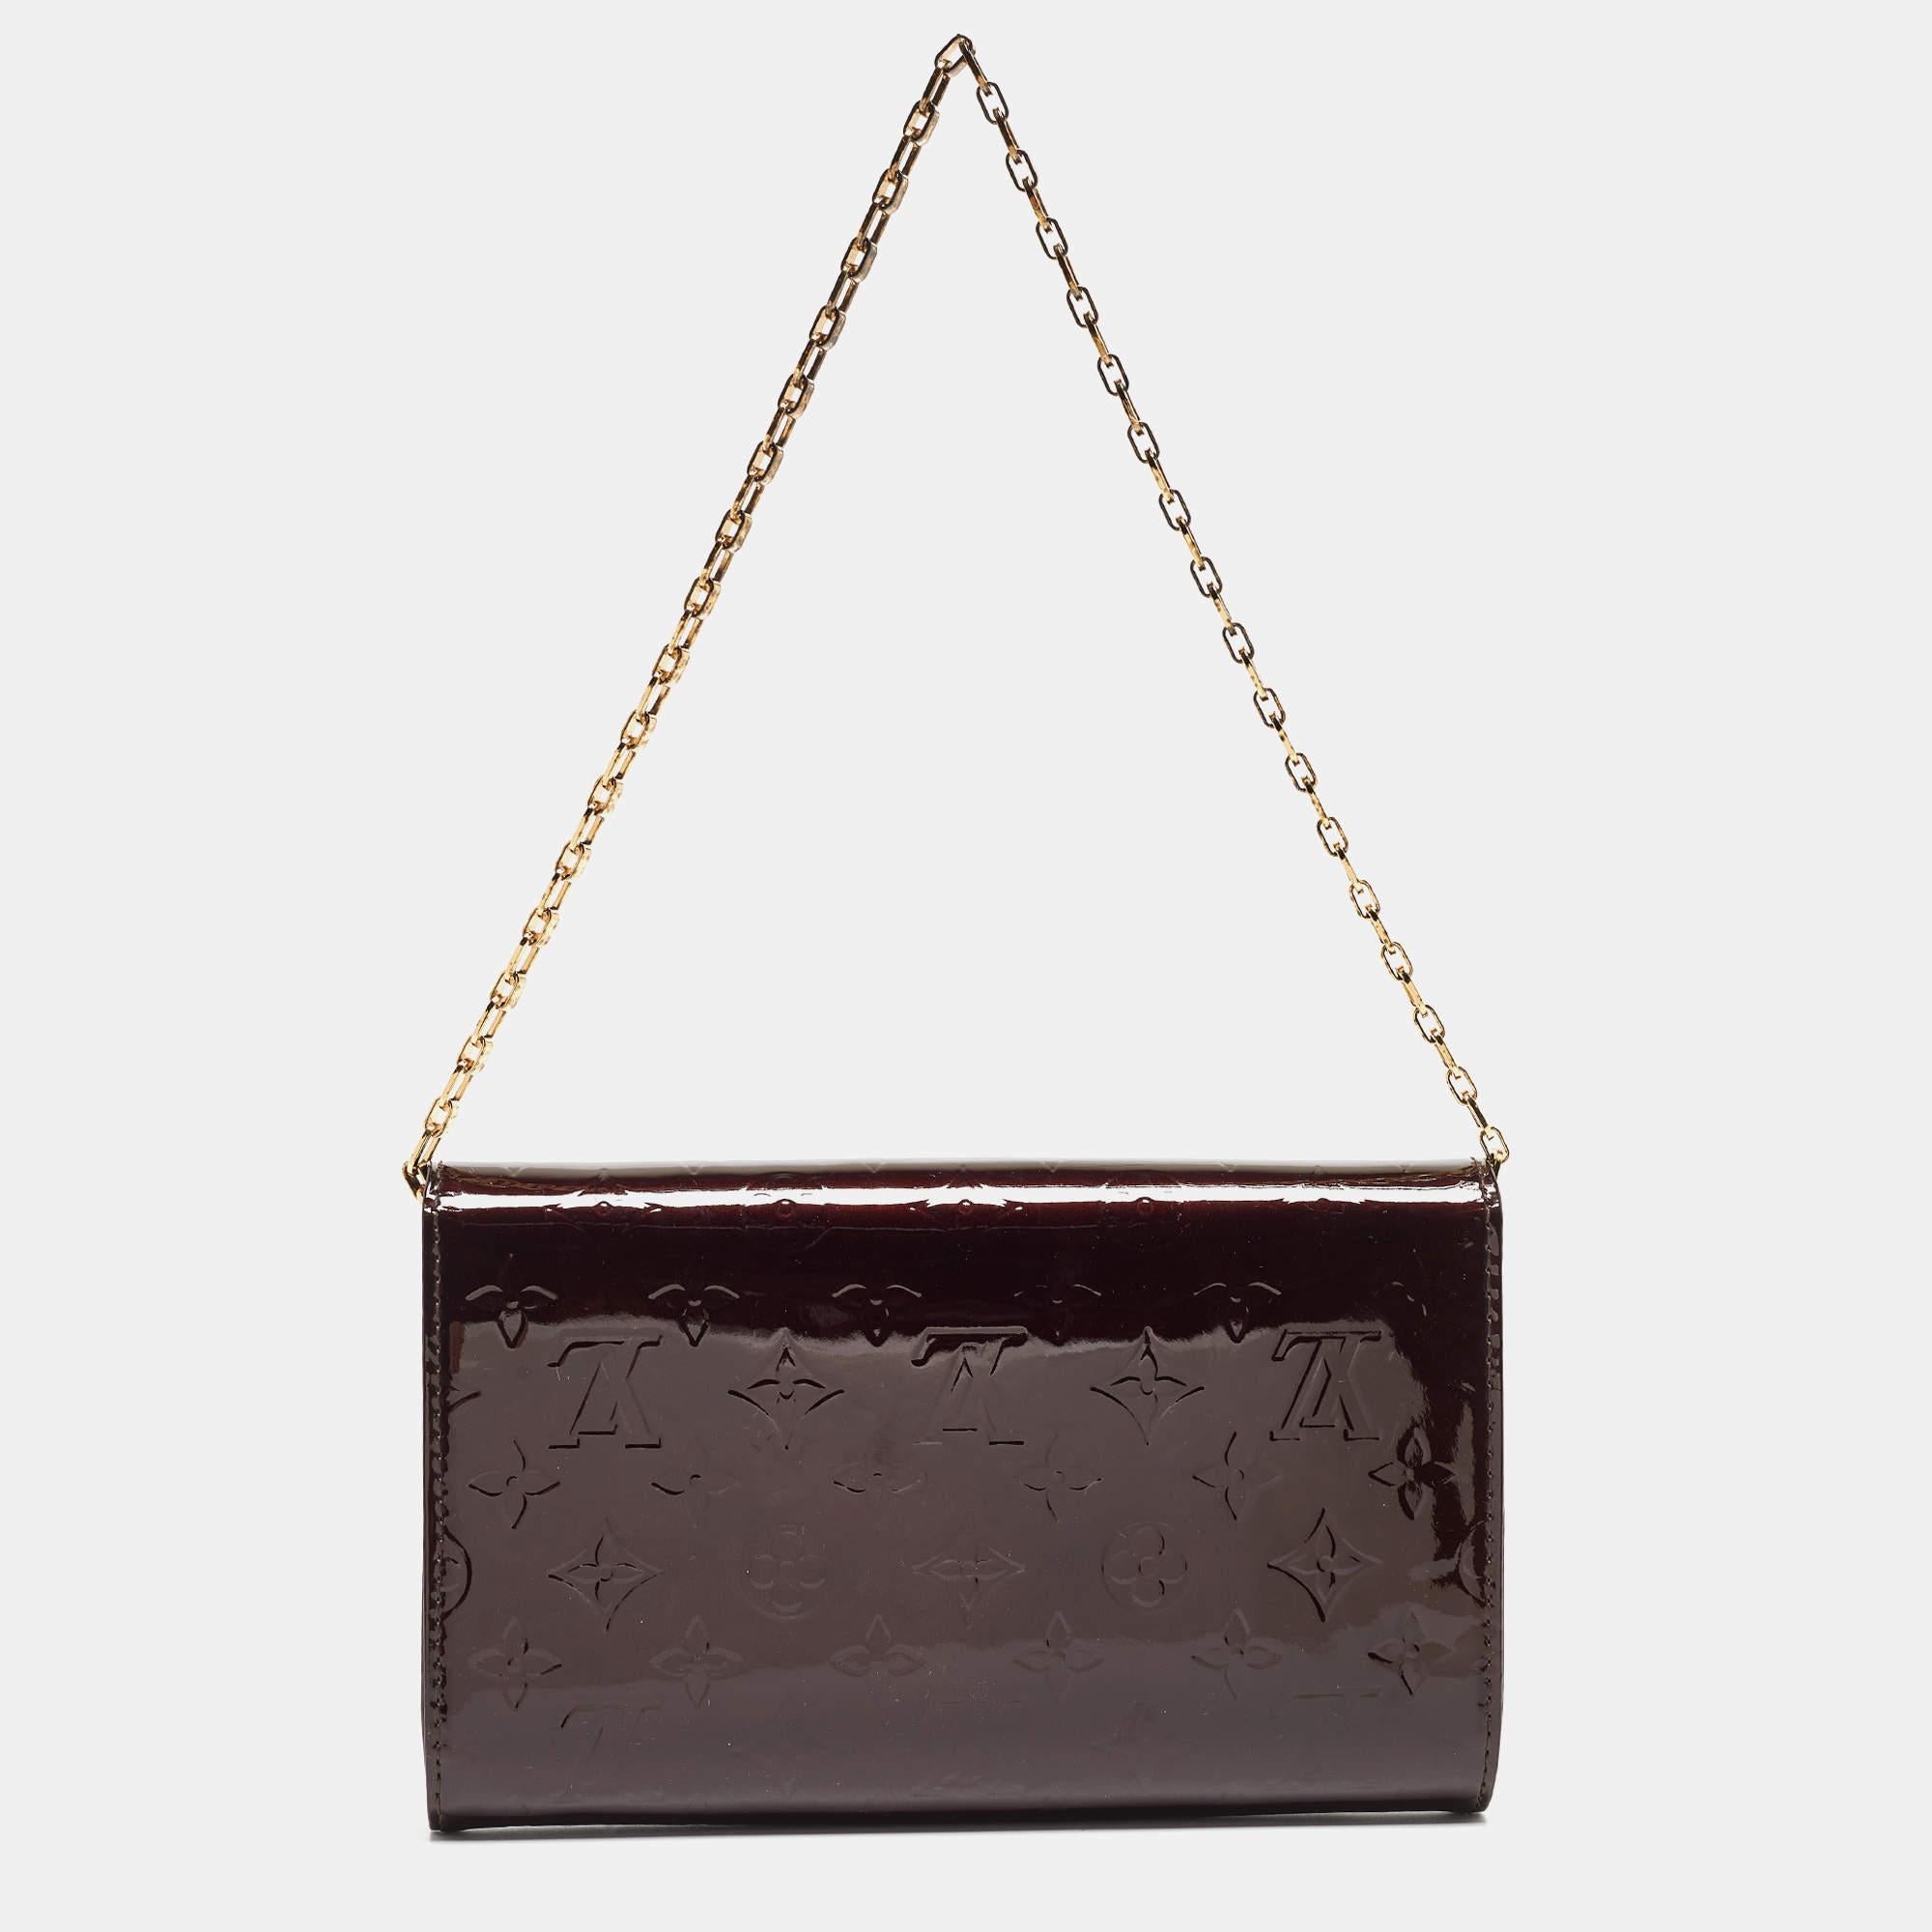 Louis Vuitton bietet Ihnen mit dieser gut verarbeiteten Tasche ein wunderbares Accessoire, das Sie jeden Tag begleitet. Sie hat einen unverwechselbaren Look und eine praktische Größe.

Enthält: Original Staubbeutel, Original Box, Info-Booklet,